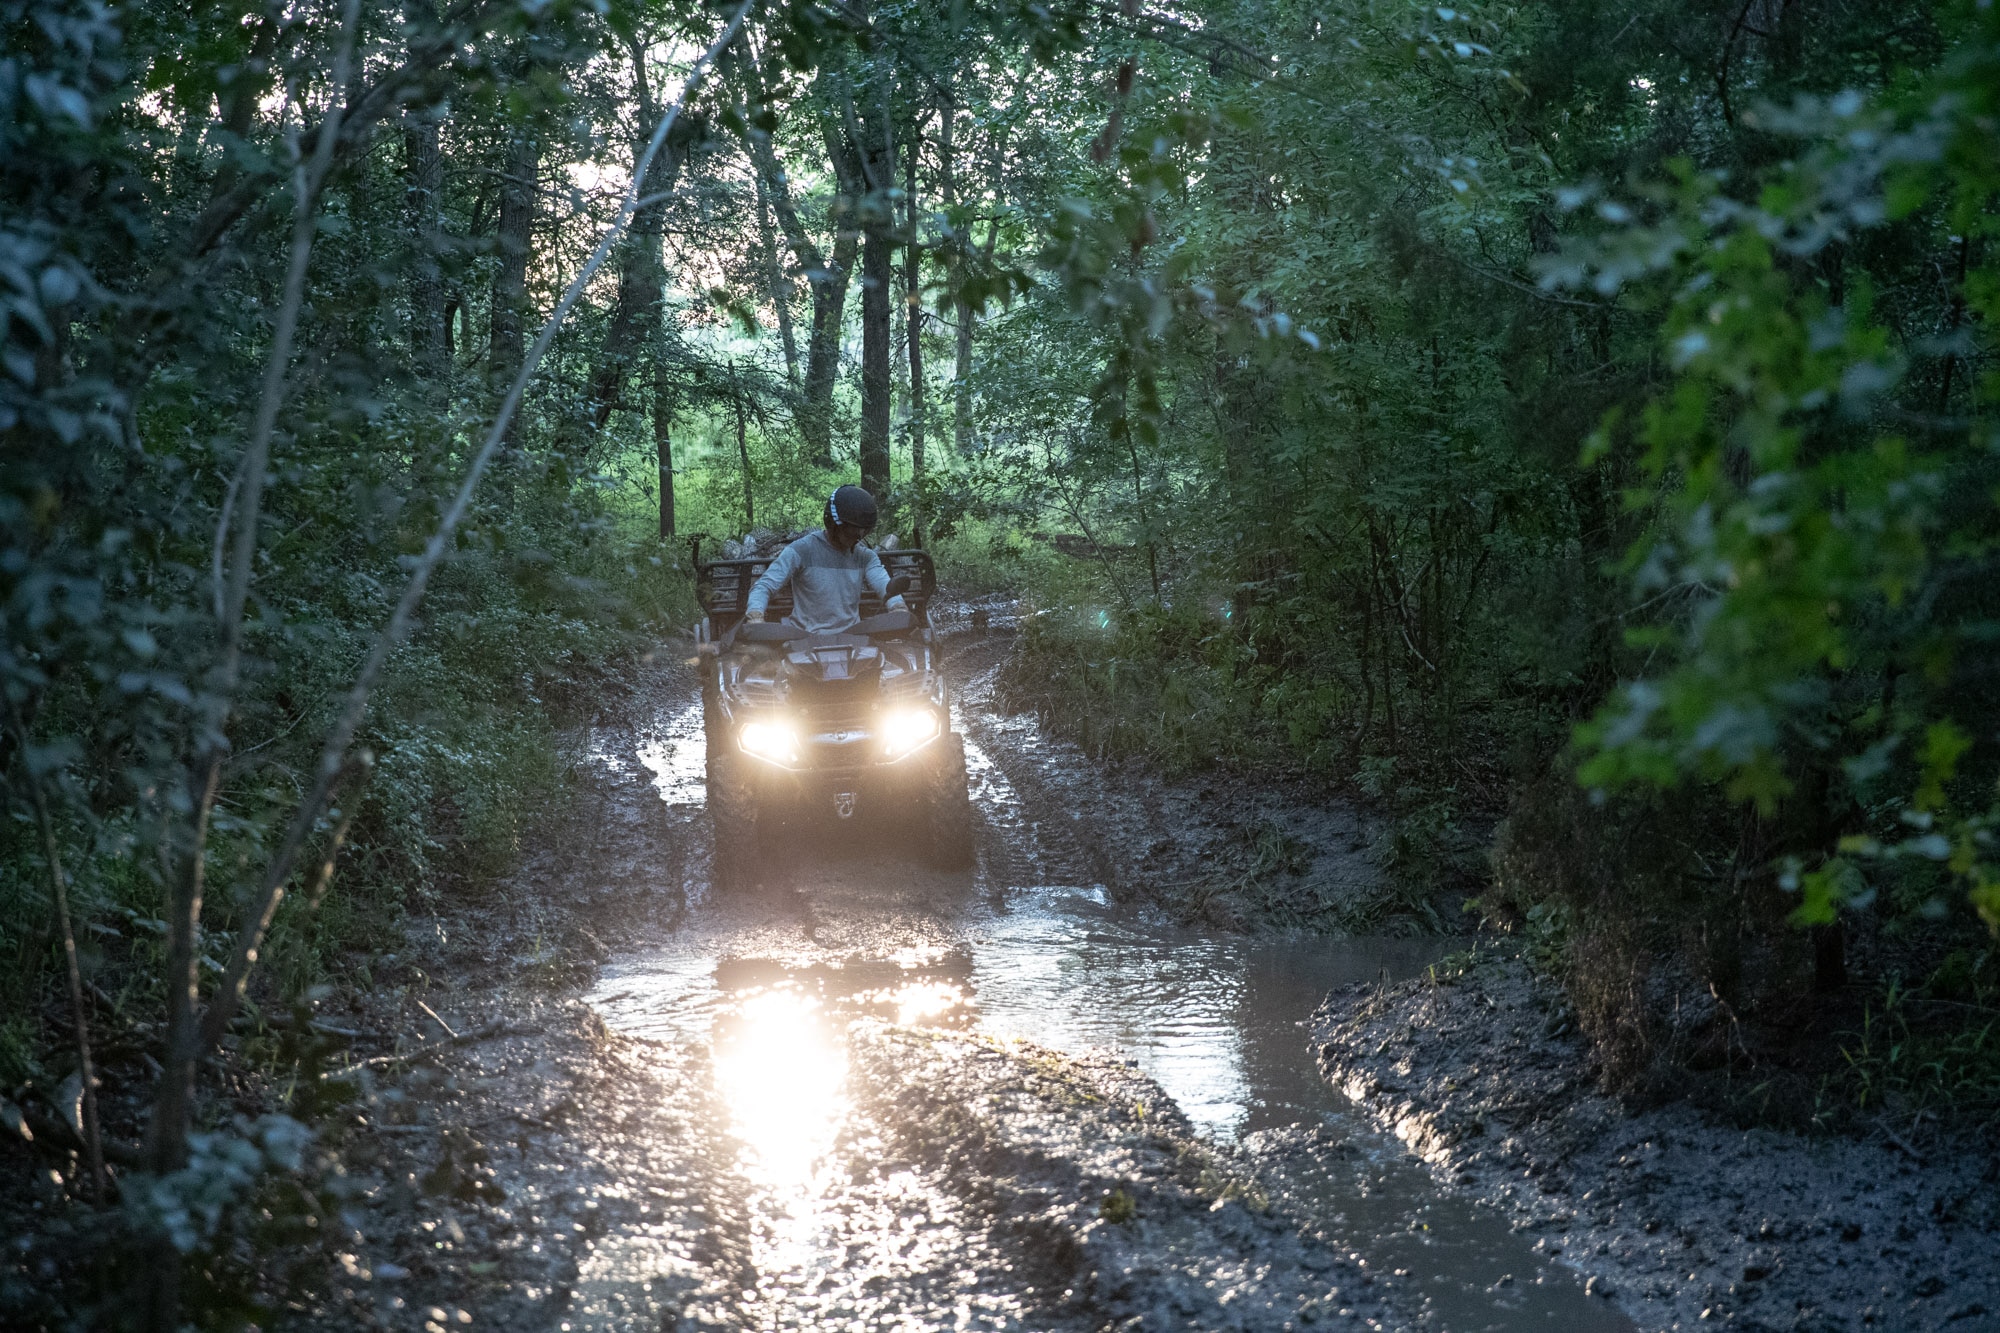 Man driving his Outlander through a muddy trail